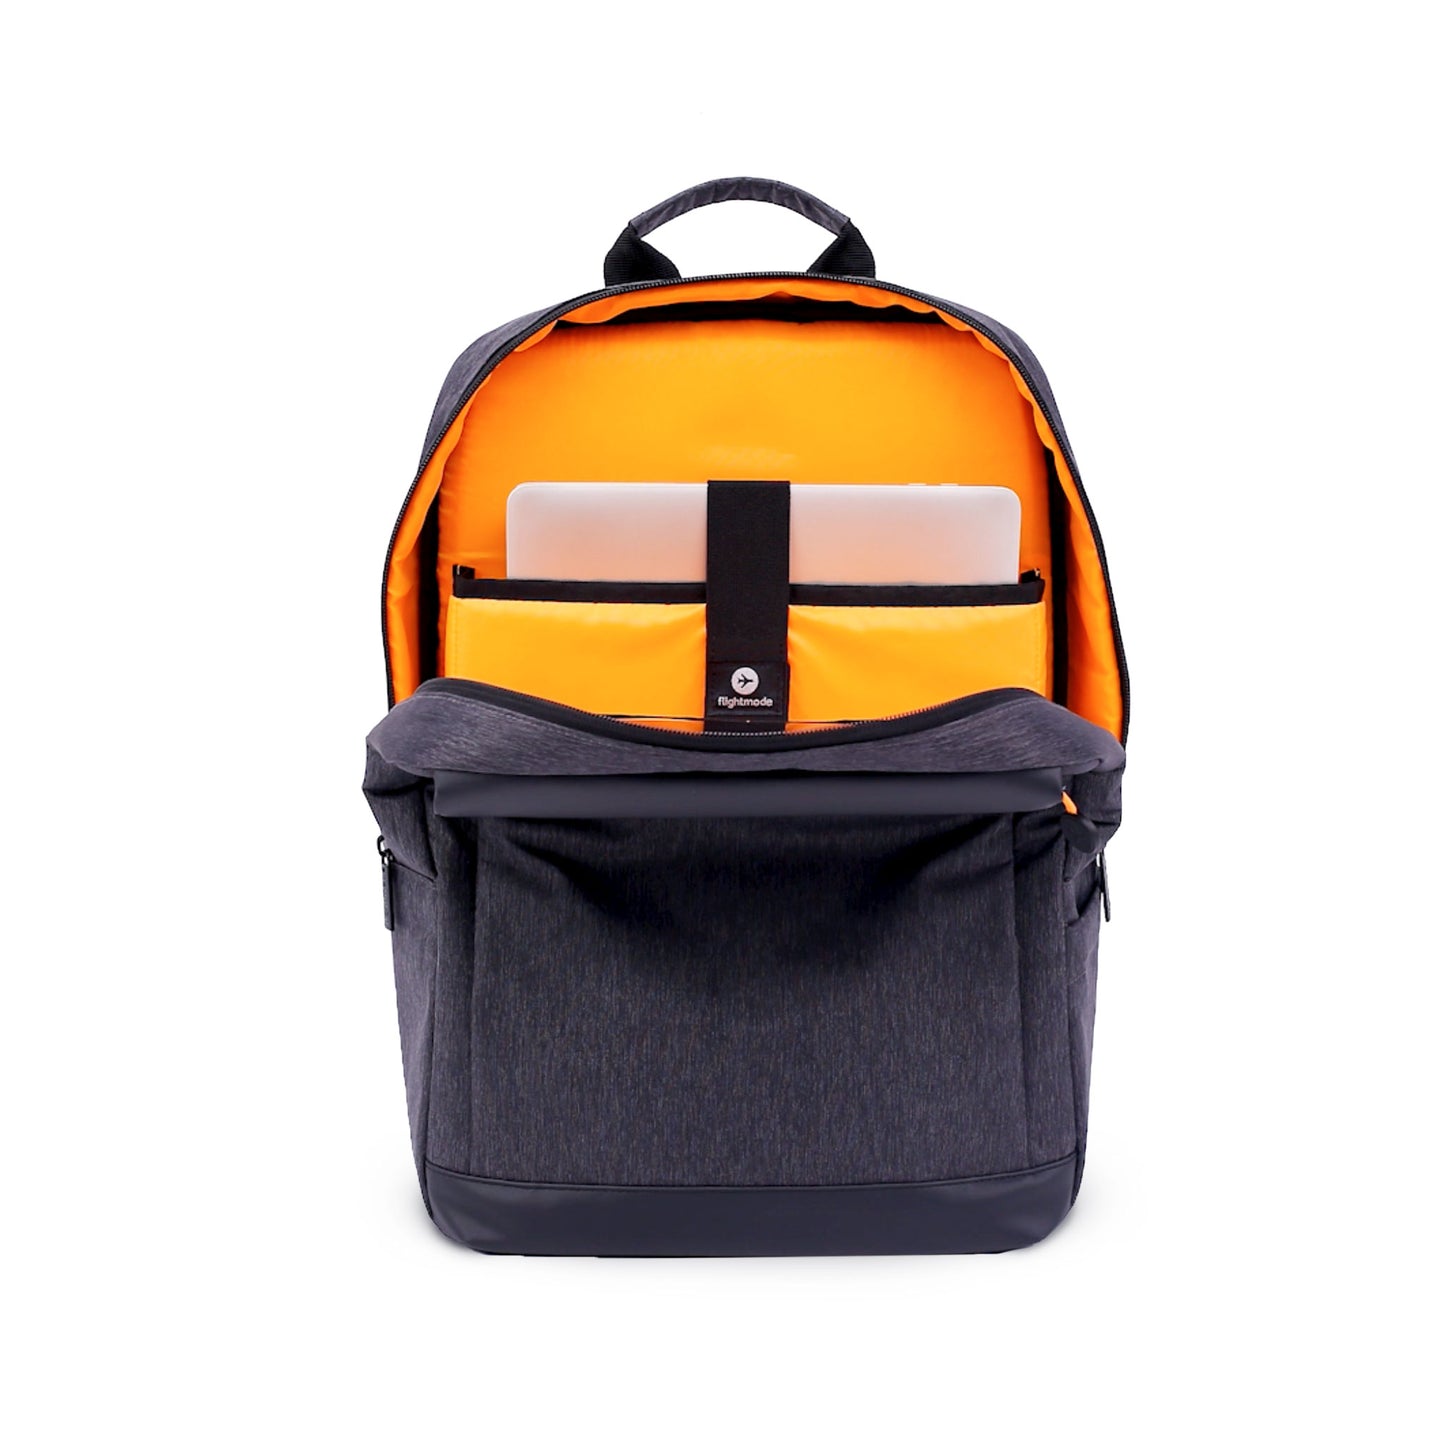 Buy Waterproof Laptop Backpack | Flightmode Australia